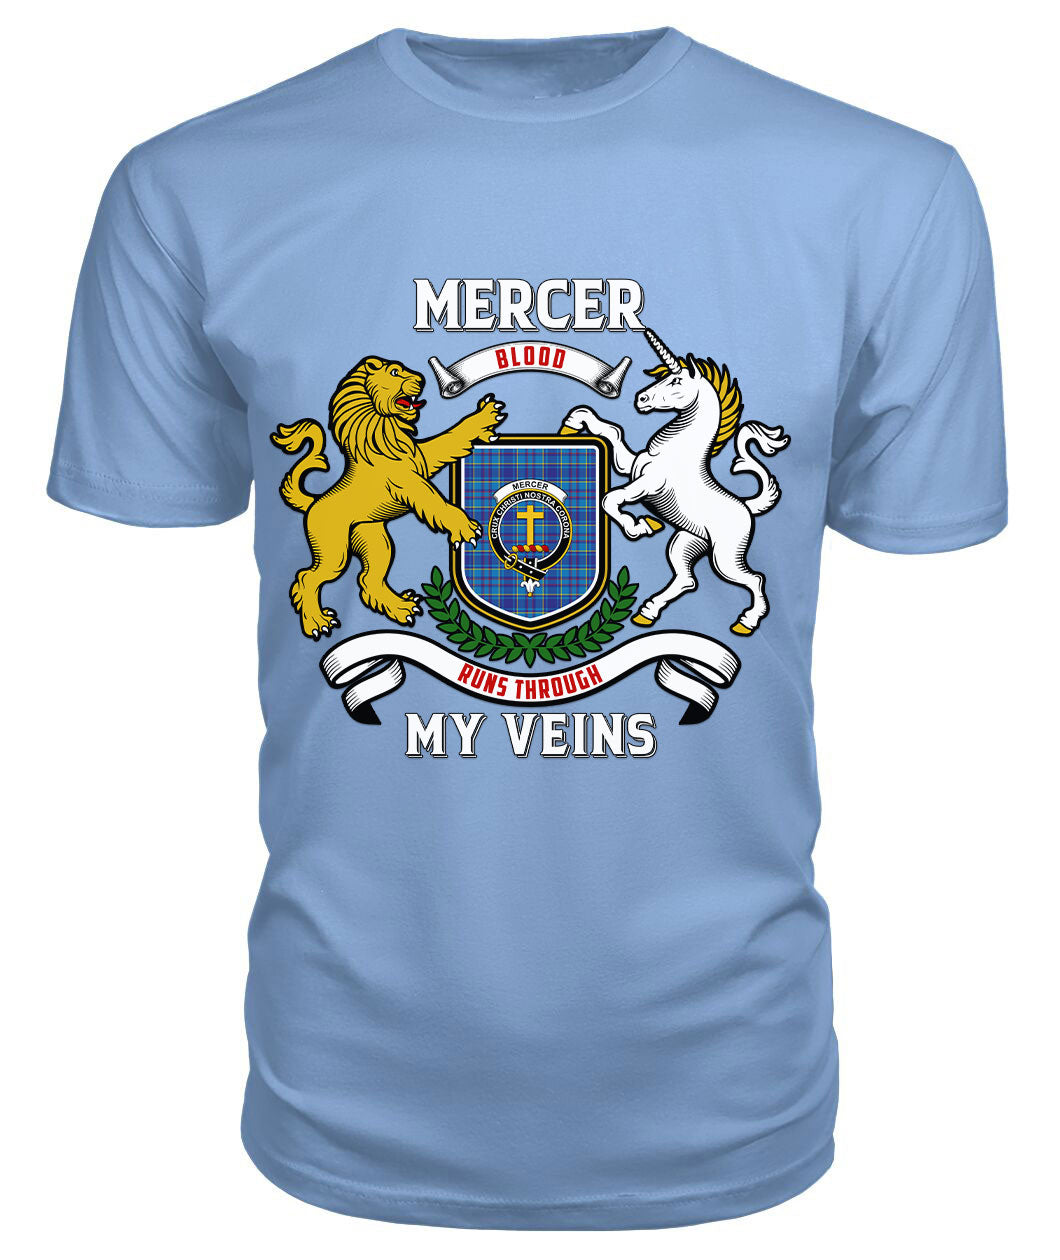 Mercer Modern Tartan Crest 2D T-shirt - Blood Runs Through My Veins Style